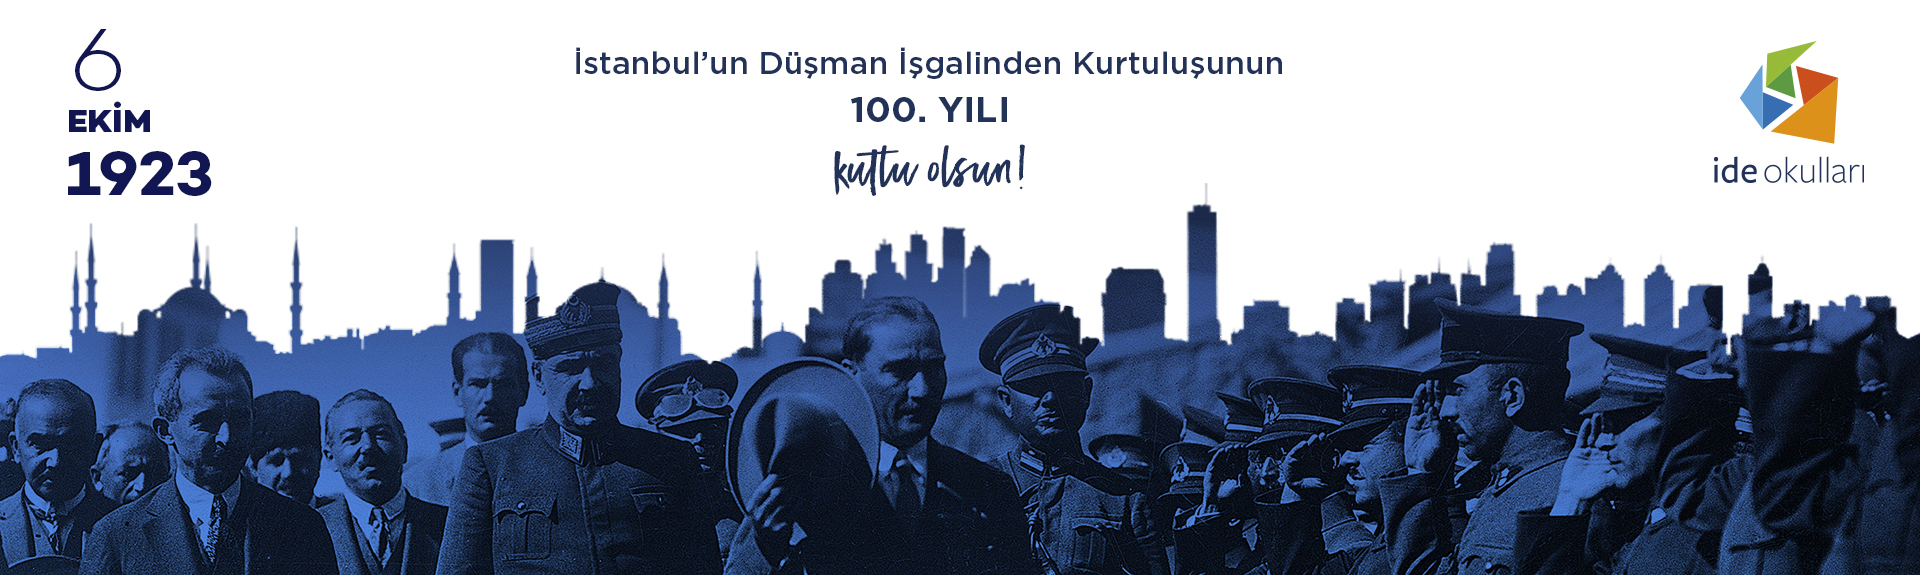 6 Ekim İstanbul'un Kurtuluşu'nun 100. Yılı Kutlu Olsun!